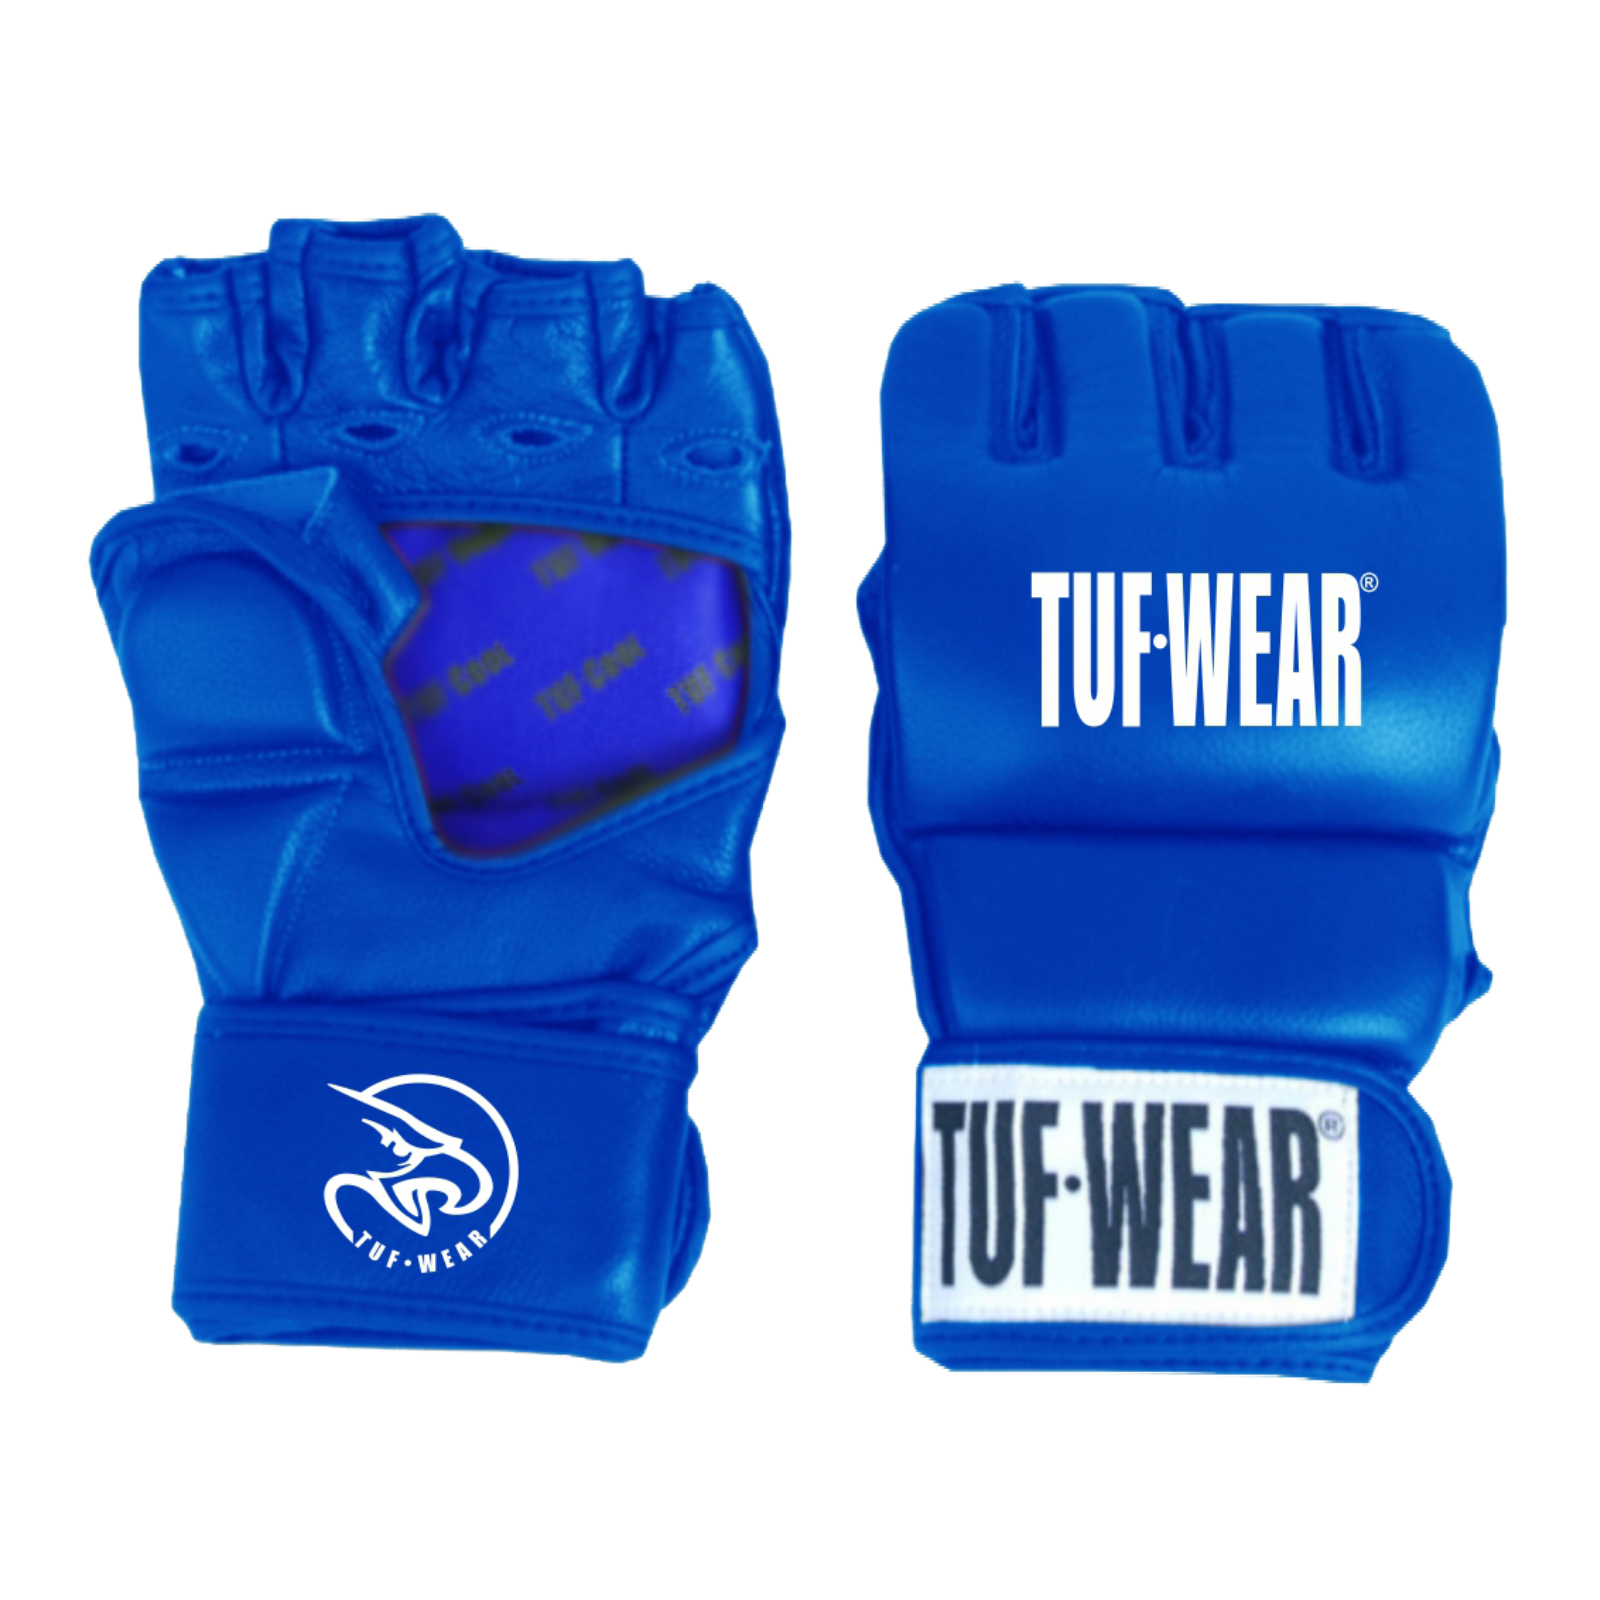 TUF WEAR MMA Gloves 7oz Strike Leather Training